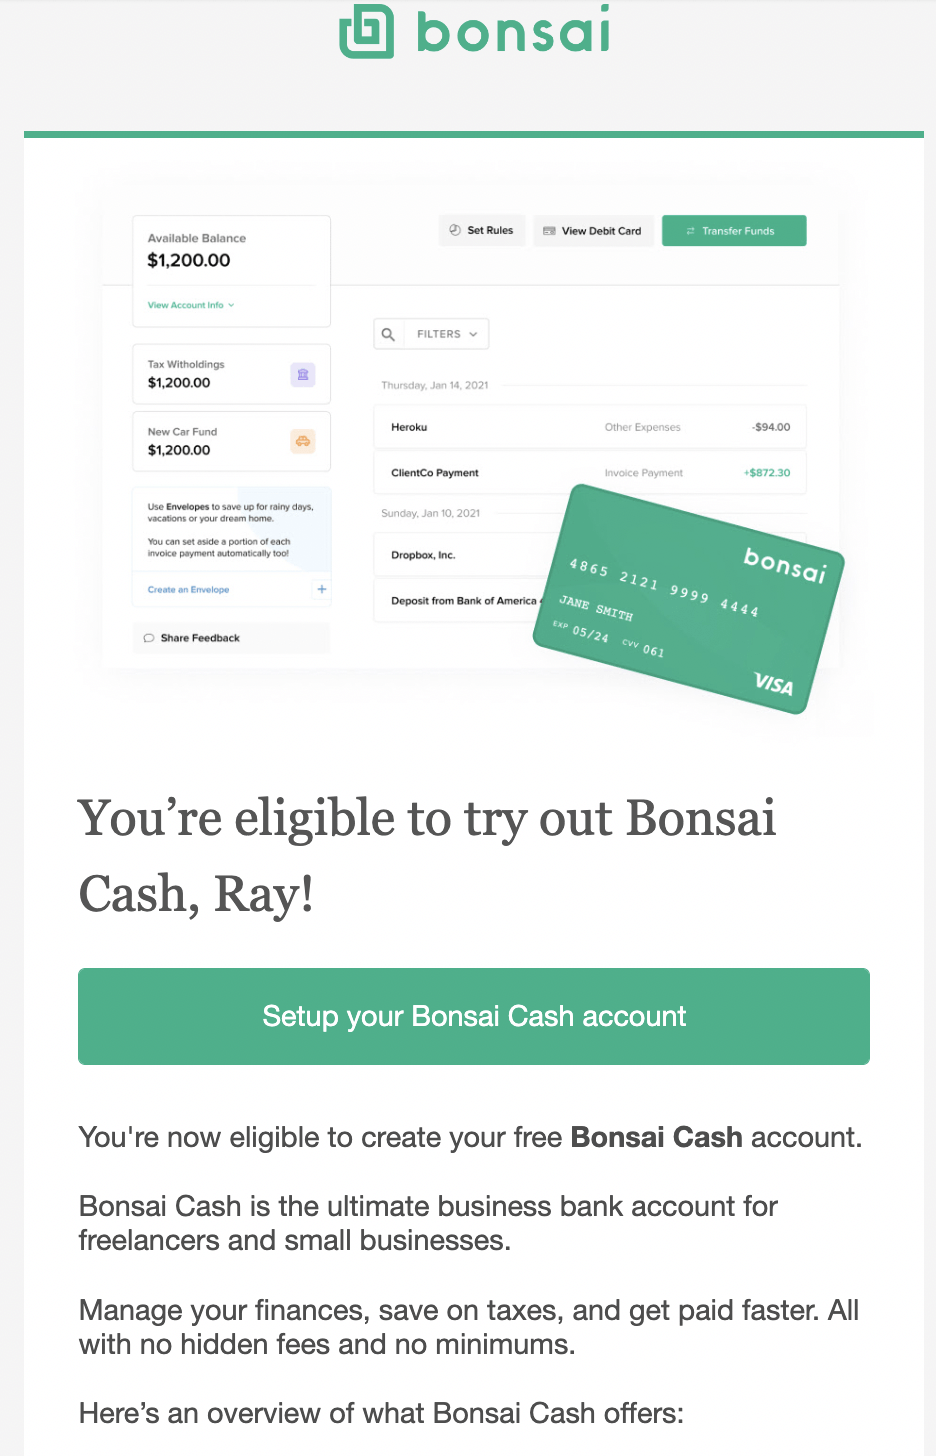 SaaS Email Nurture Campaigns: Bonsai's first nurture email